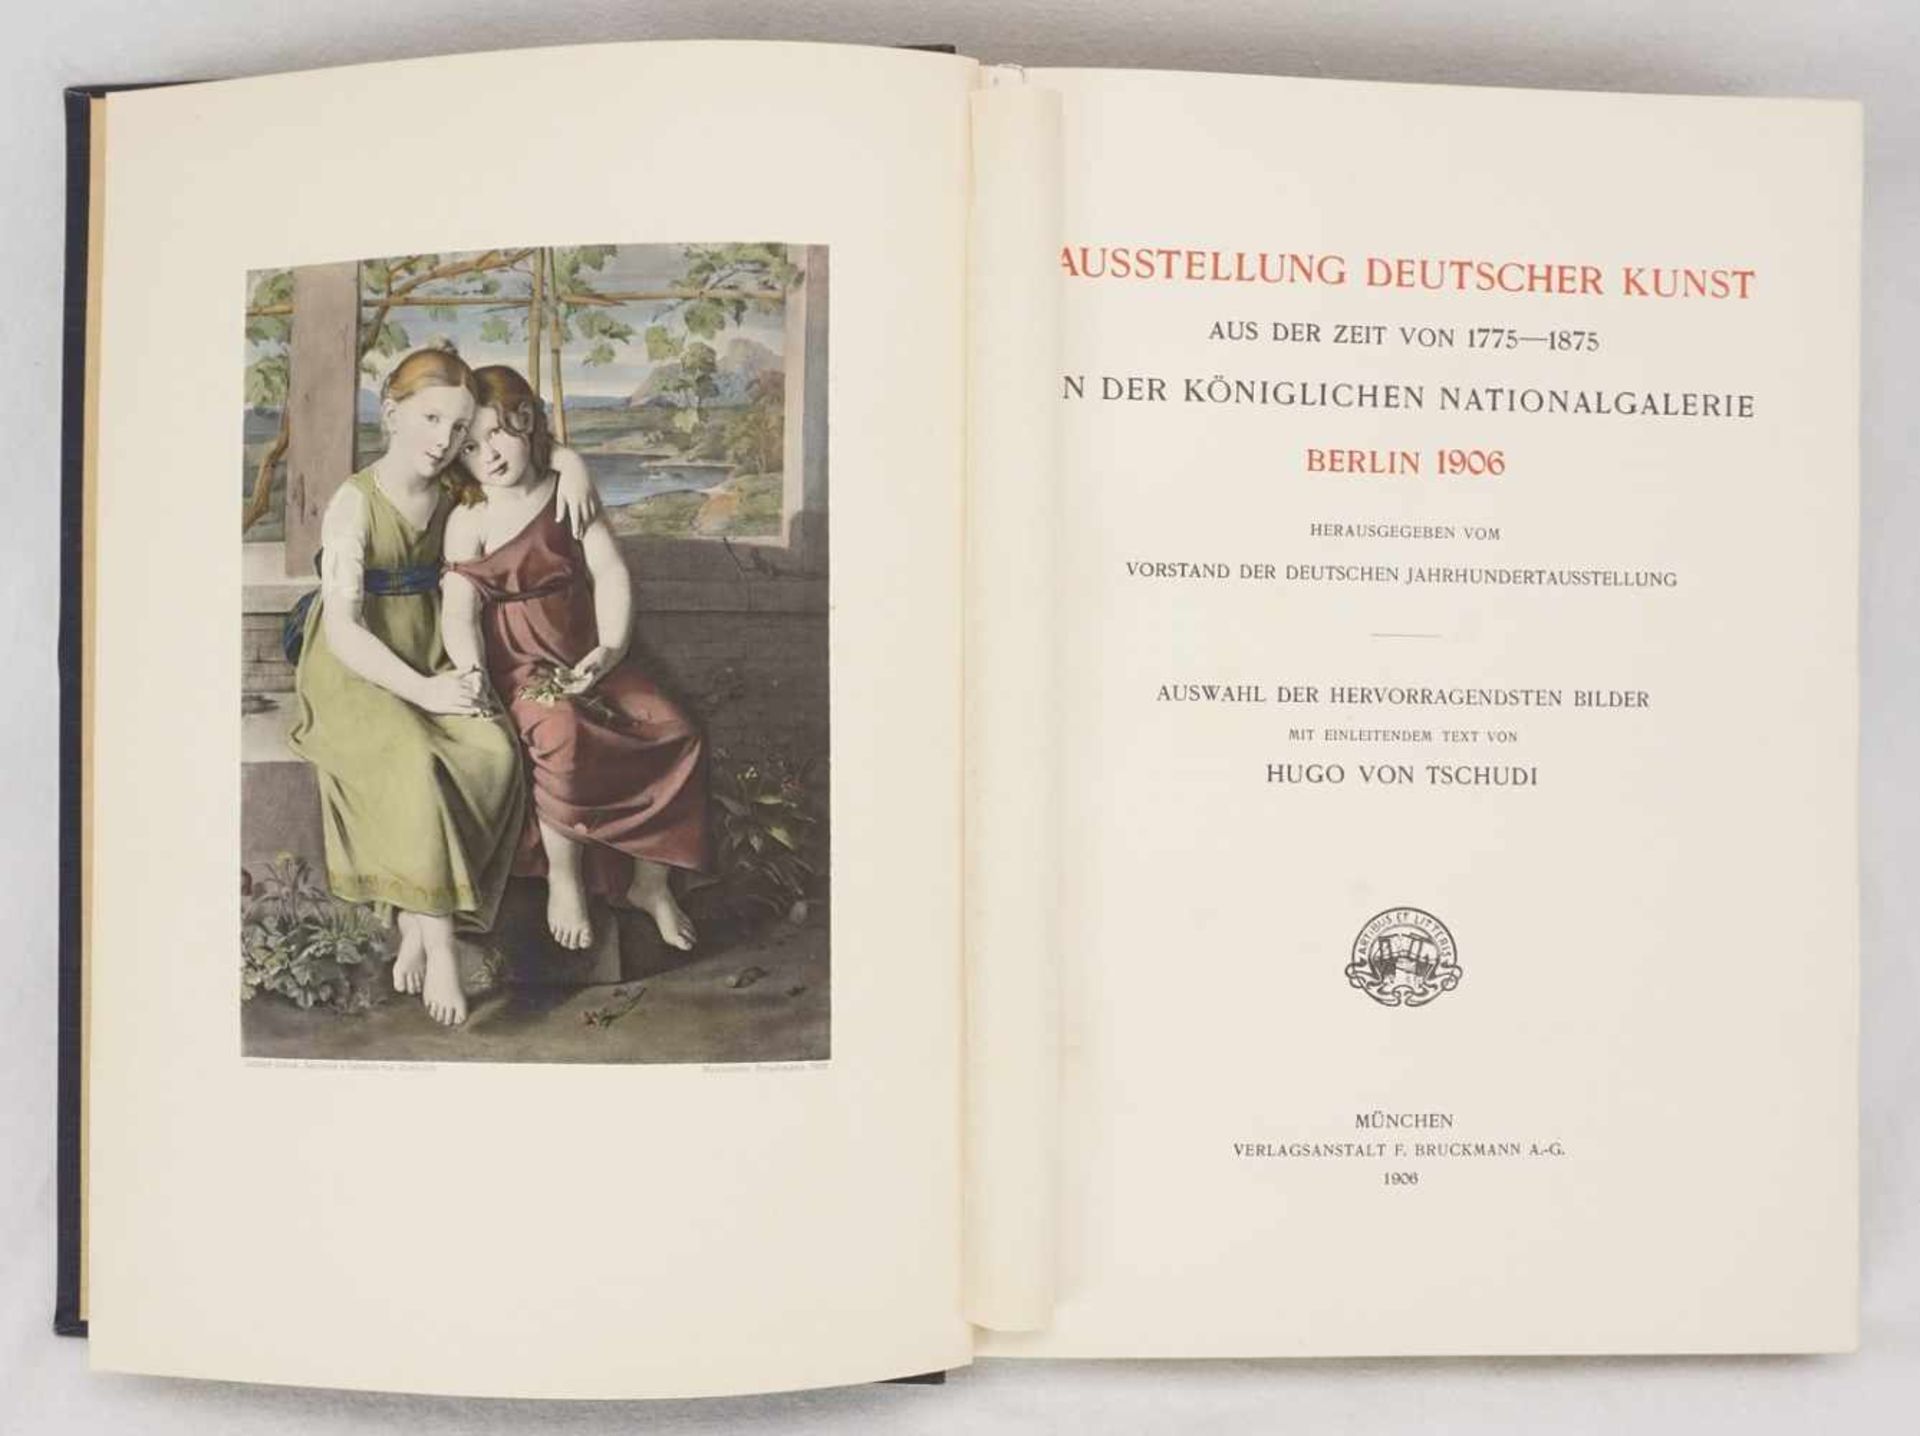 Hugo von Tschudi, "Die deutsche Jahrhundert-Ausstellung Berlin 1906" - Bild 3 aus 5